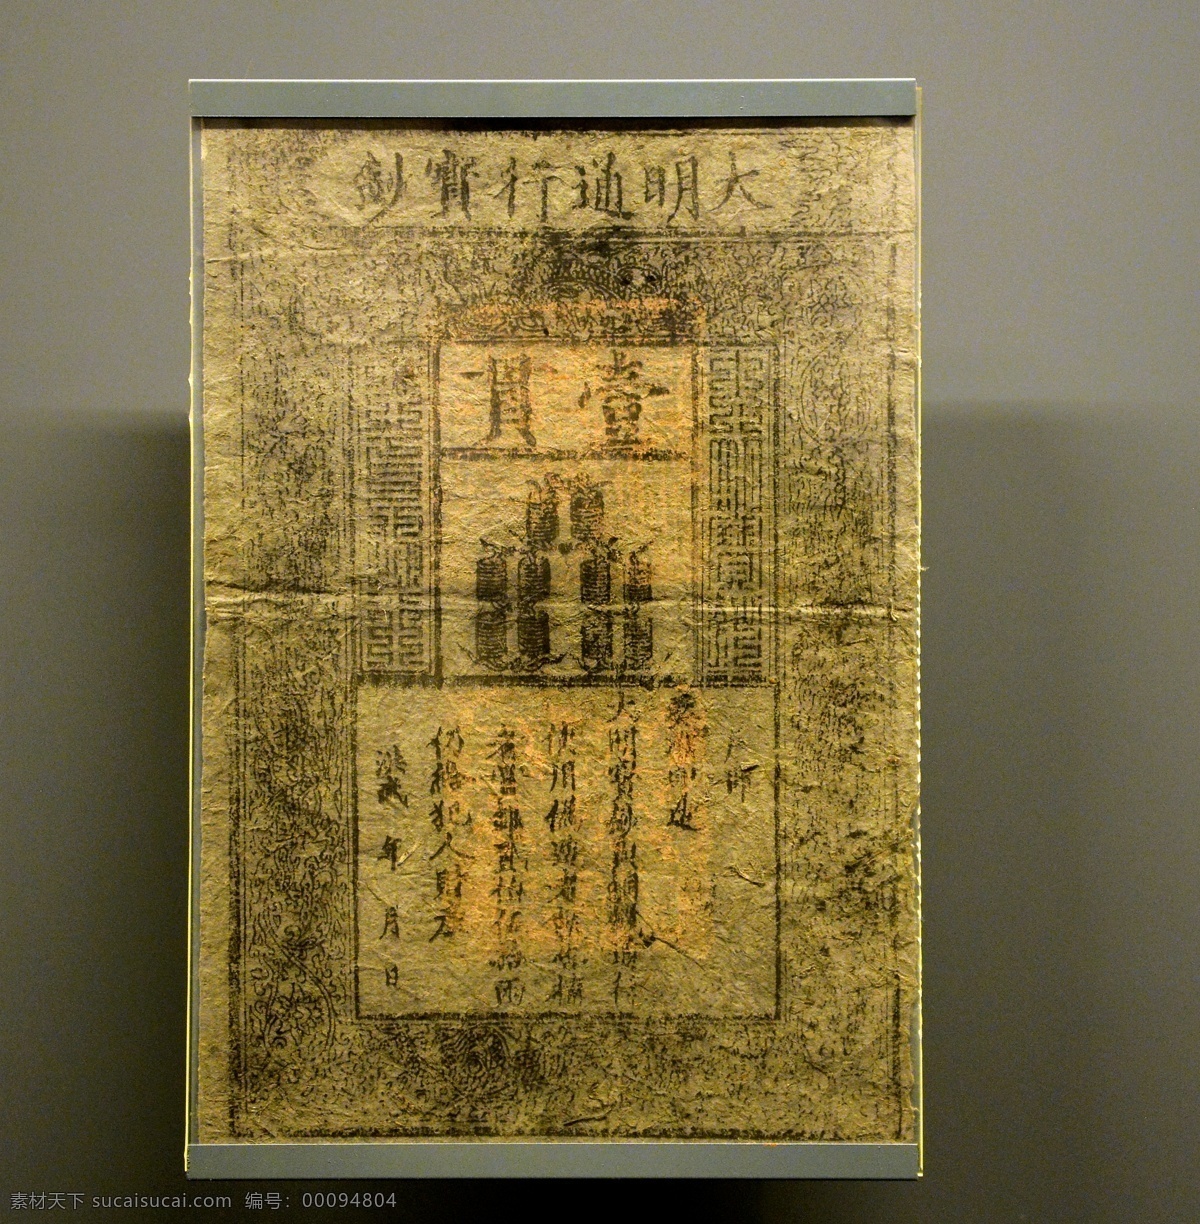 古代纸钞 首都博物馆 文物 纸钞 传统文化 钱币收藏 法器 古董 北京文物 博物馆 收藏 精品 文化艺术